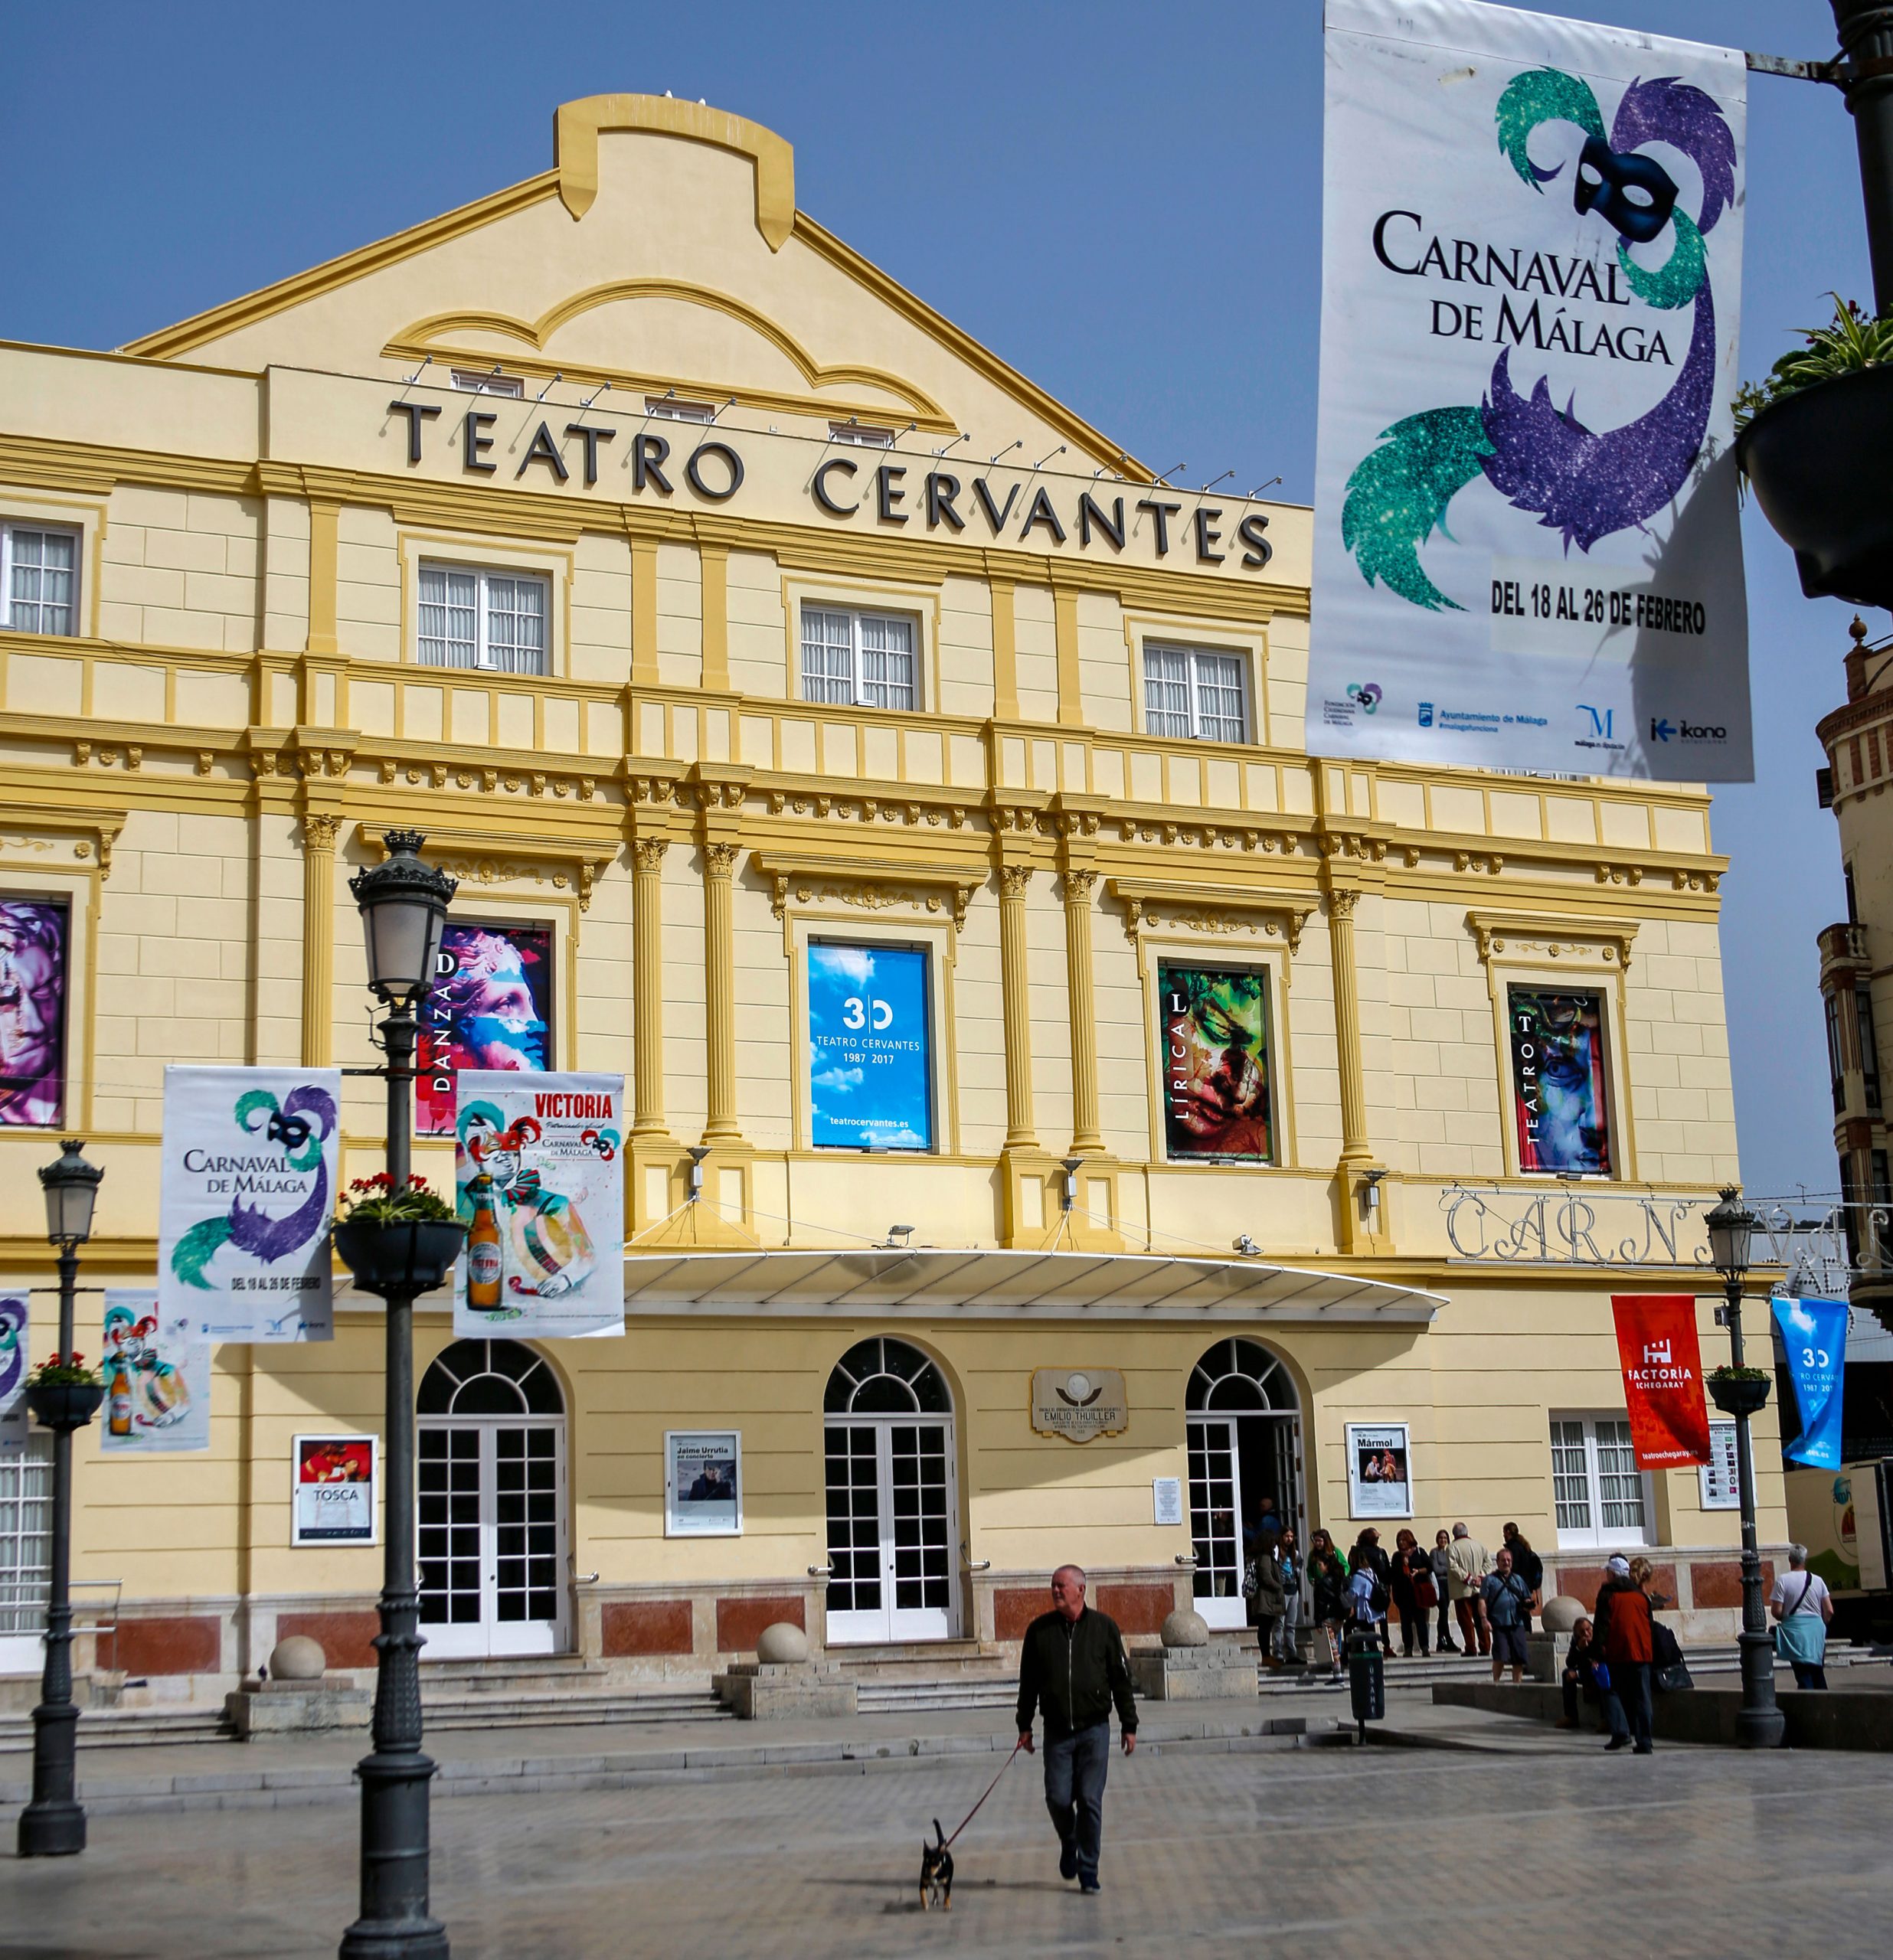 Musikfestivalen Terral i Málaga